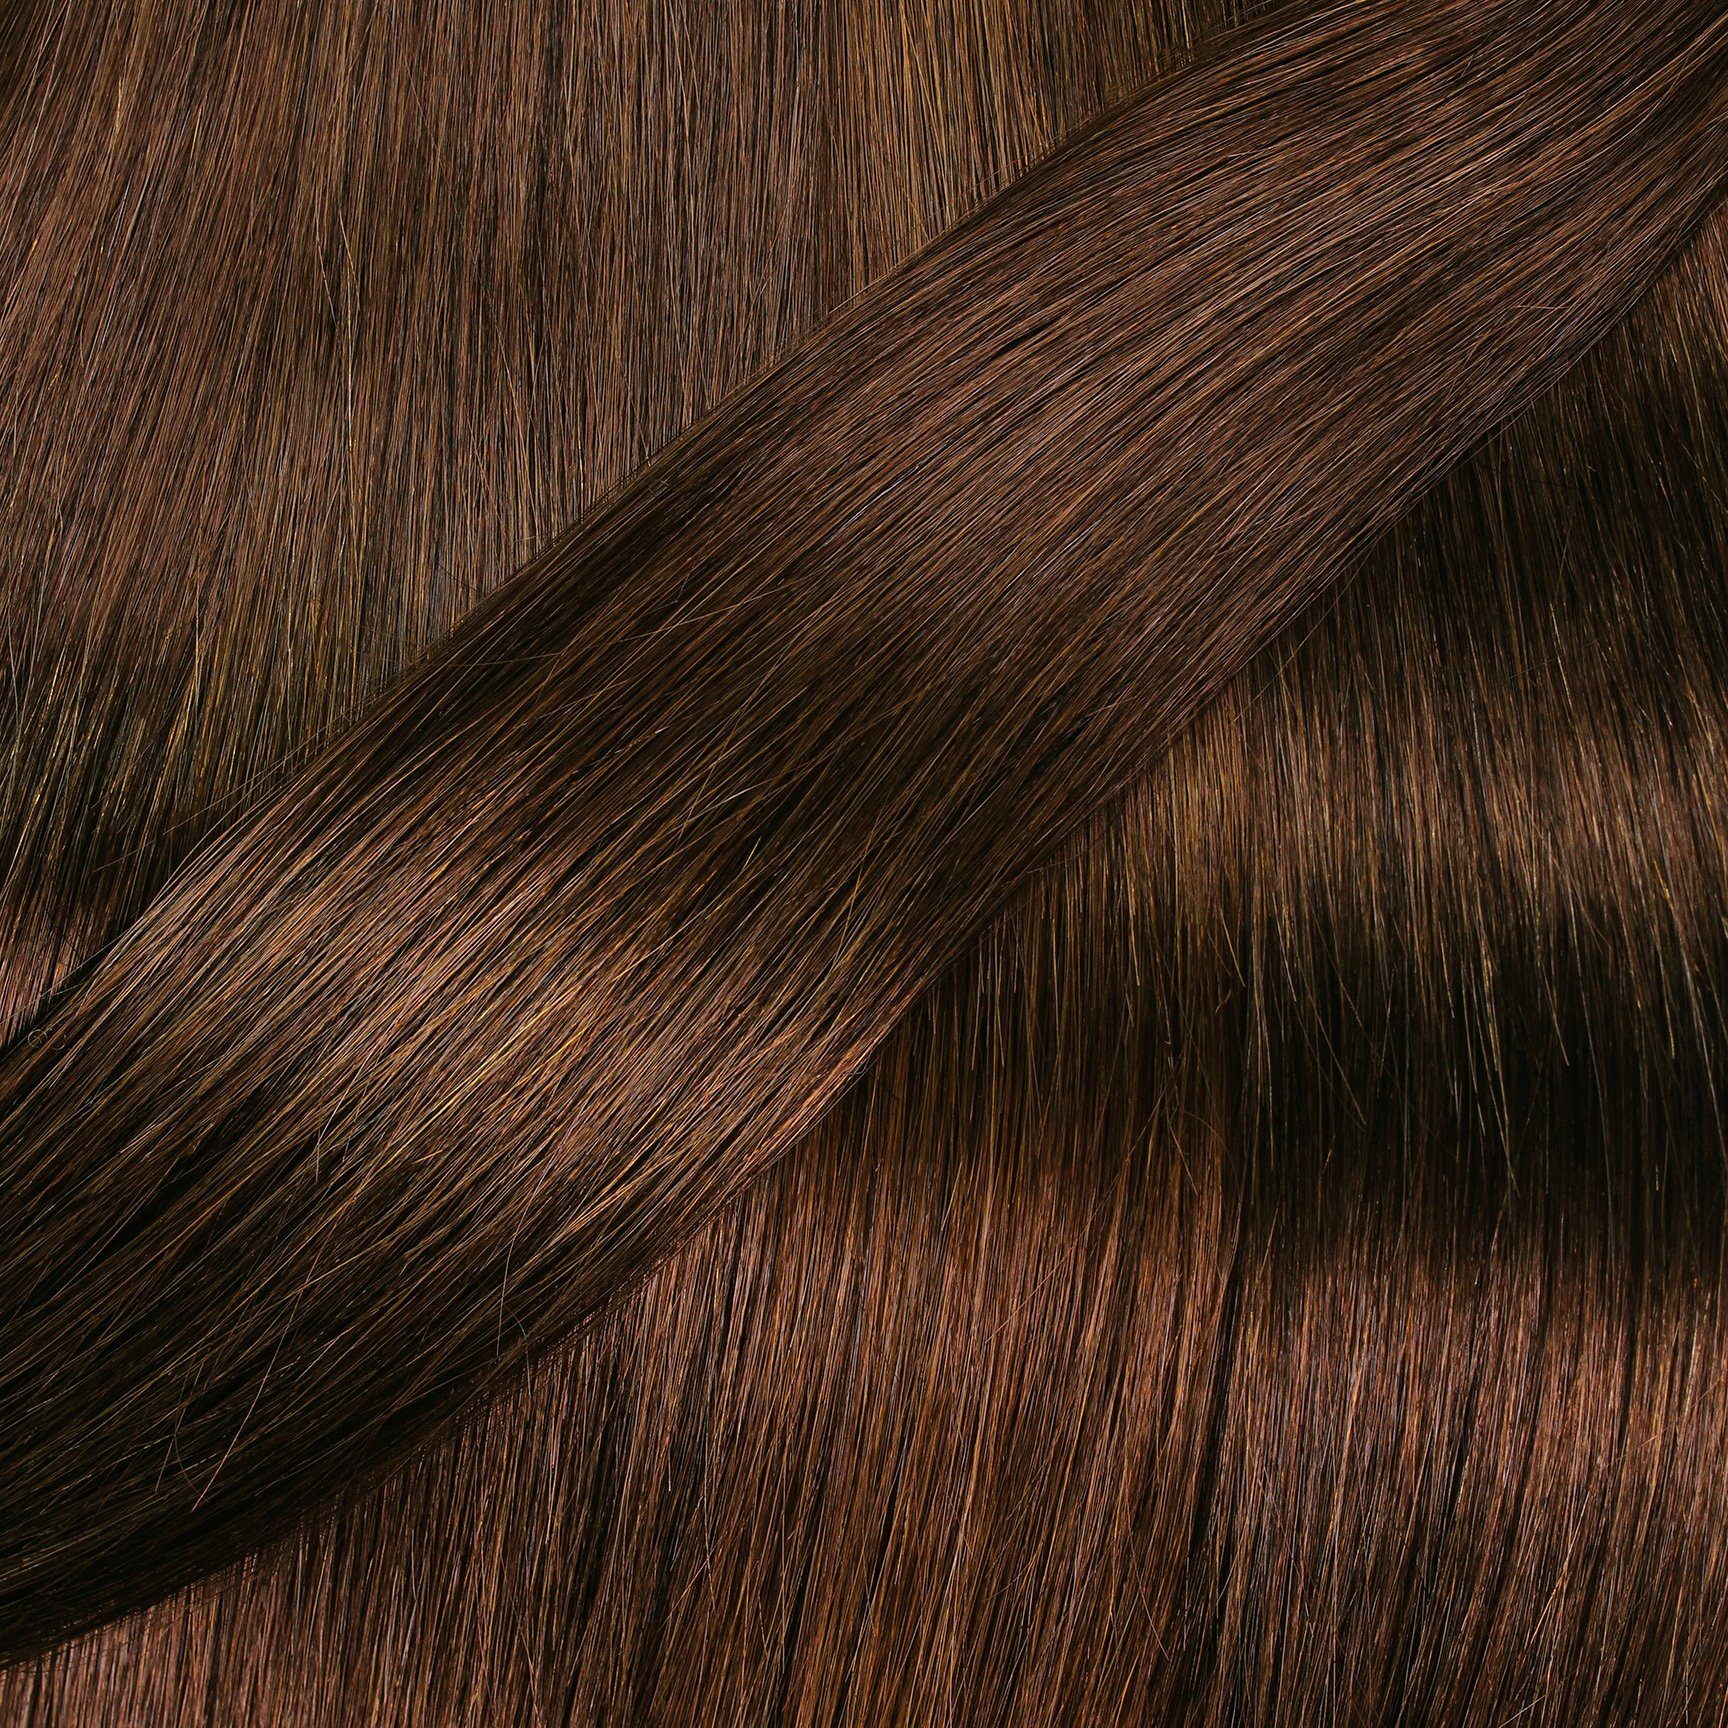 Seamless hair2heart 40cm Clip Gold Dunkelblond #6/3 Extensions Echthaar-Extension